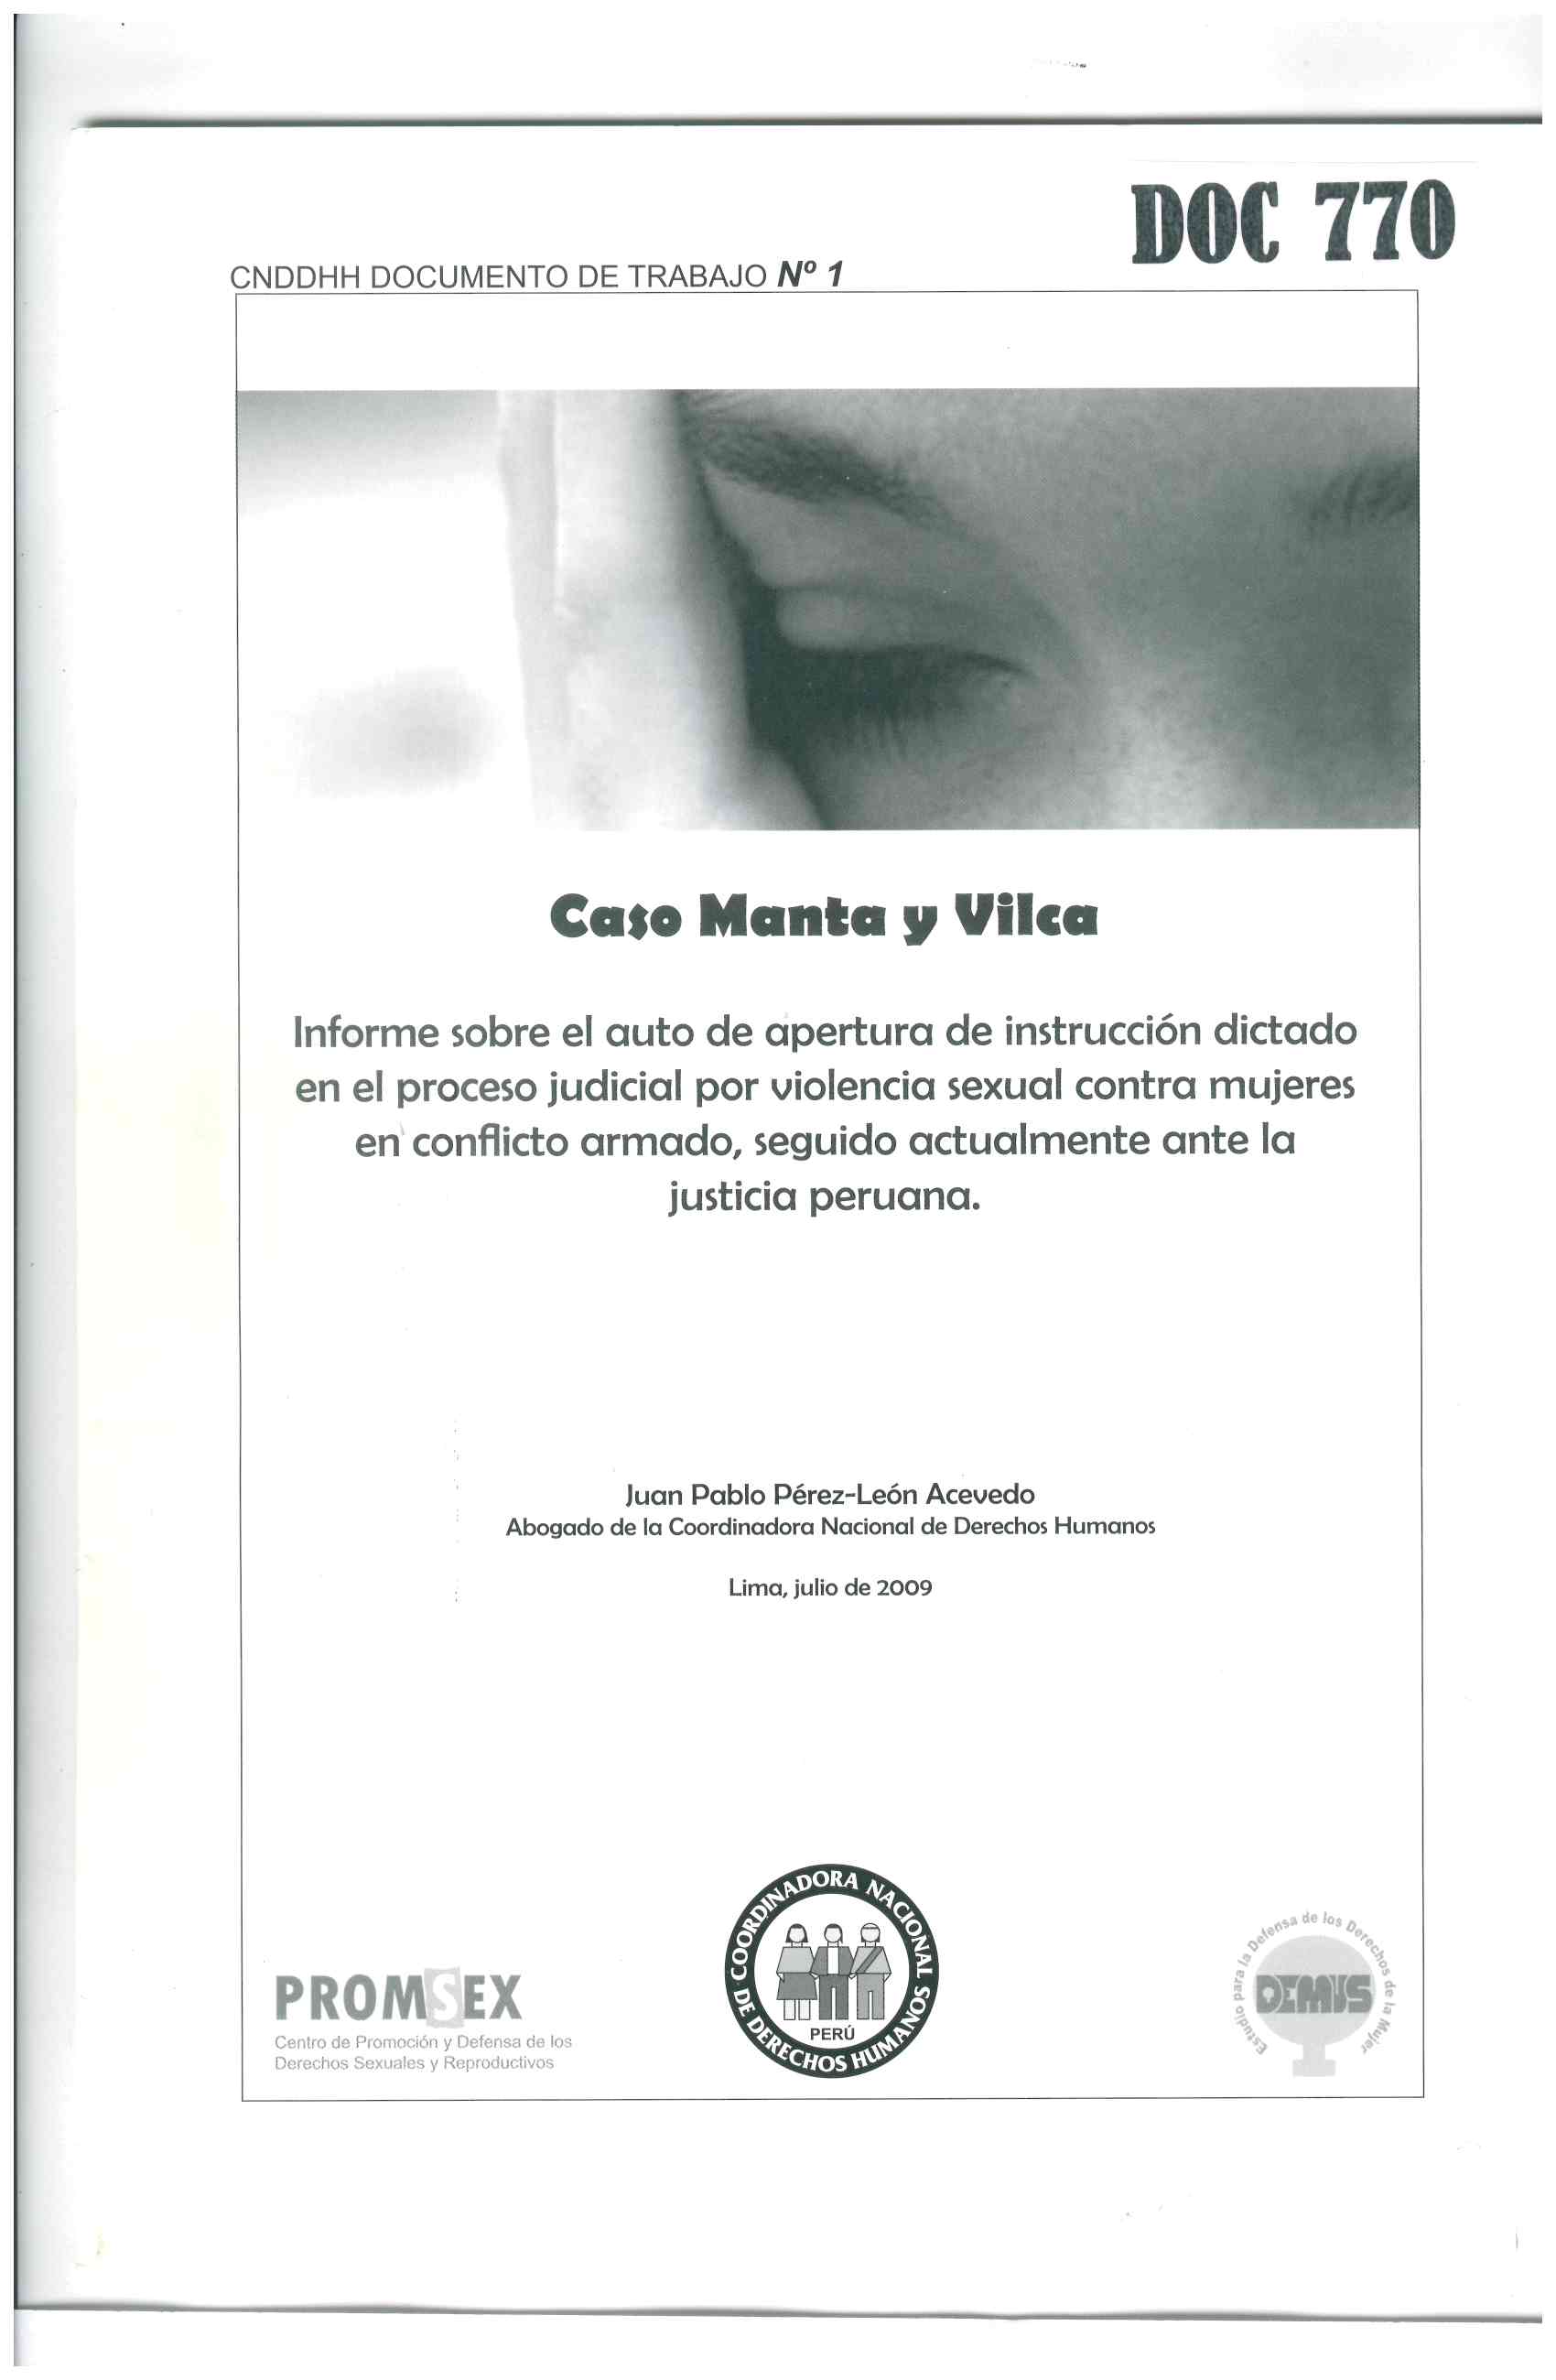 Caso Manta y Vilca. Informe sobre el auto de apertura de instrucción dictado en el proceso judicial por violencia sexual contra mujeres en conflicto armado, seguido actualmente ante la justicia peruana.